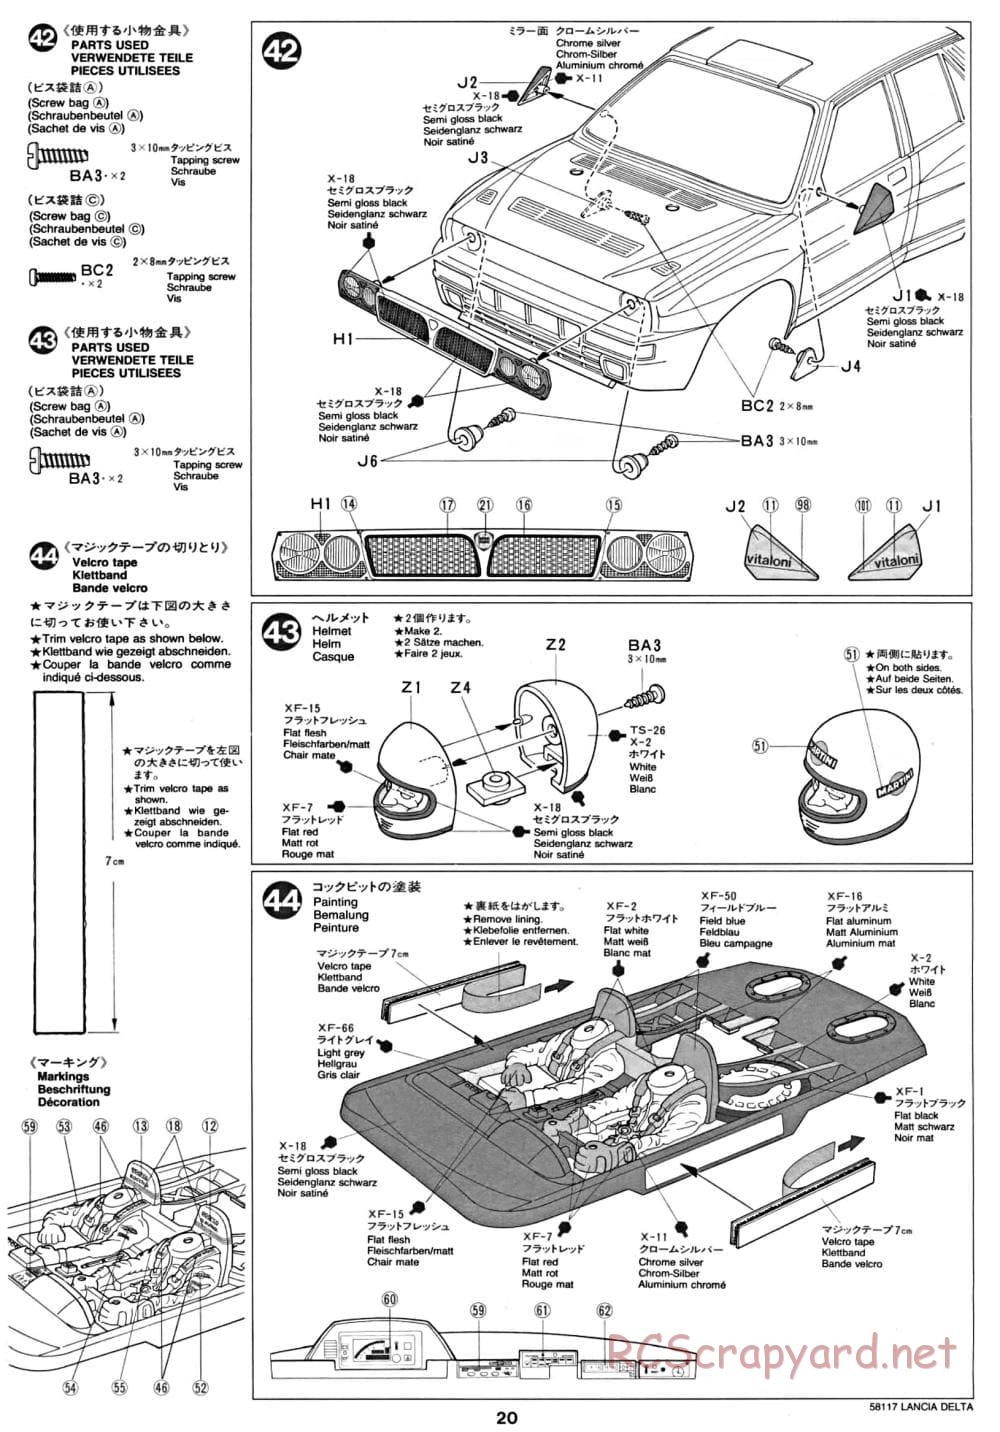 Tamiya - Lancia Delta HF Integrale - TA-01 Chassis - Manual - Page 21